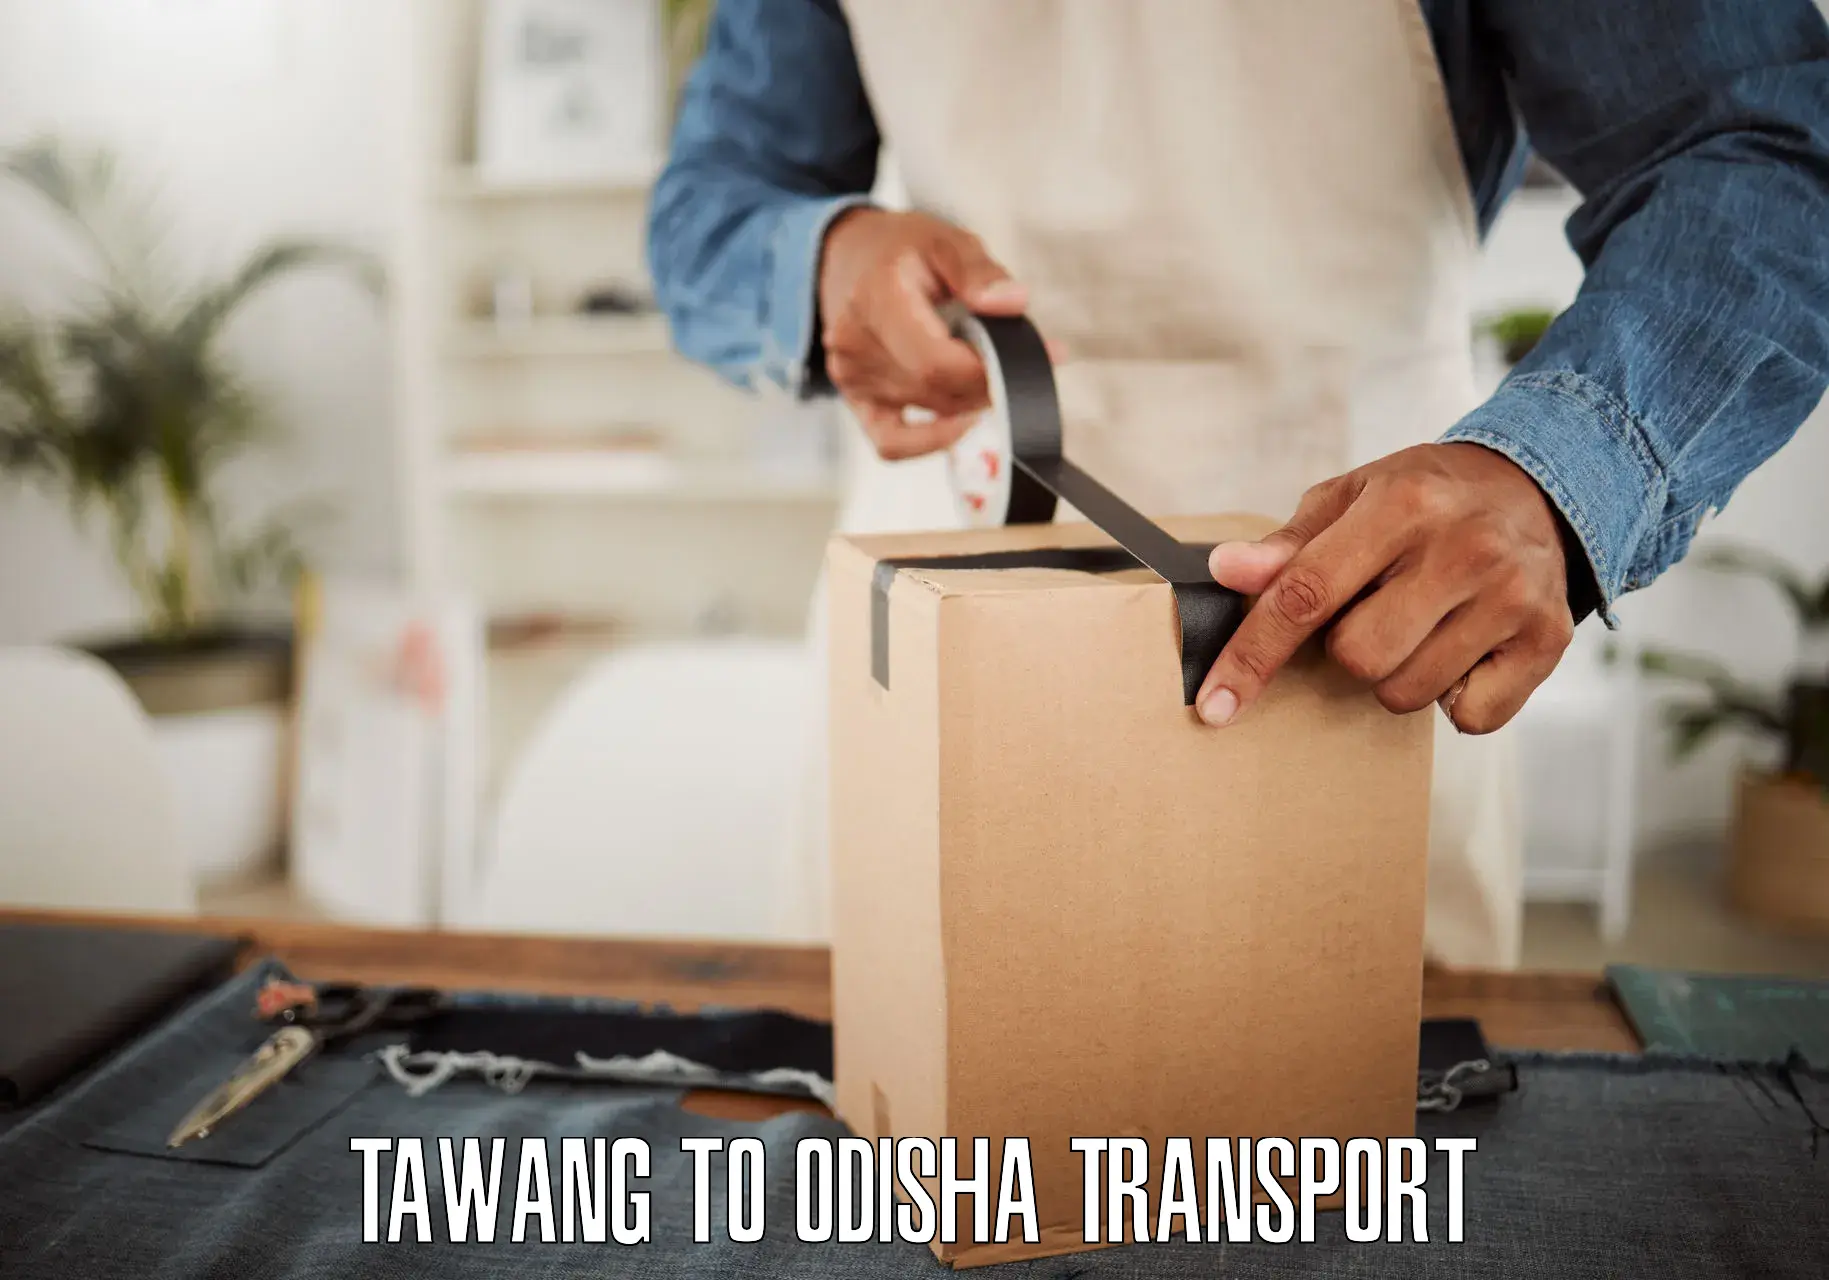 Transport in sharing Tawang to Pallahara